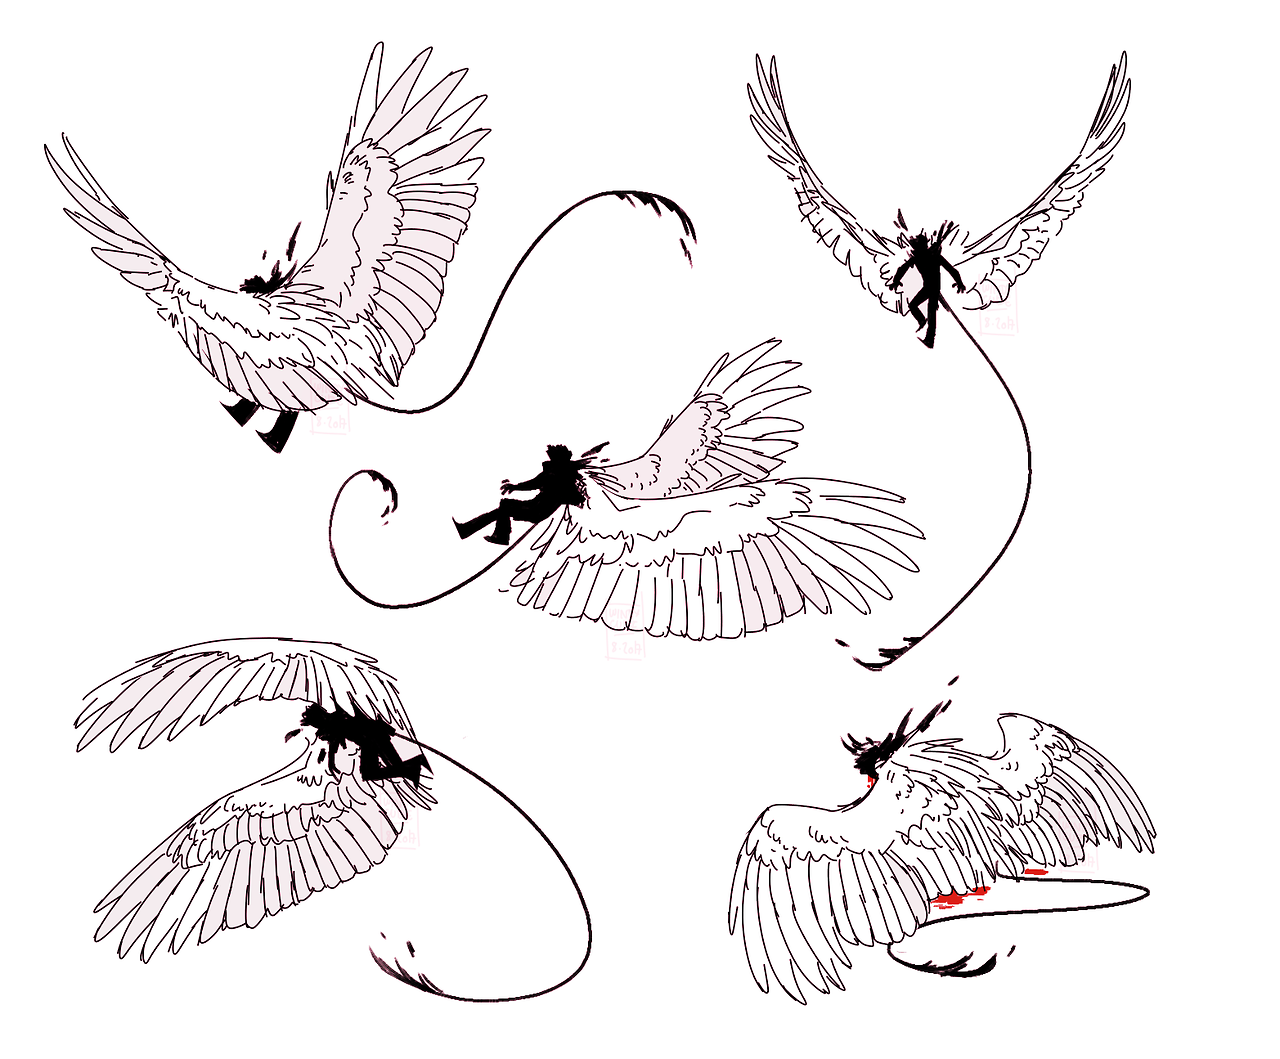 Звуки птицы тутор. Крылья референс. Крылья птицы для рисования. Крылья птиц с разных ракурсов. Позы птиц.